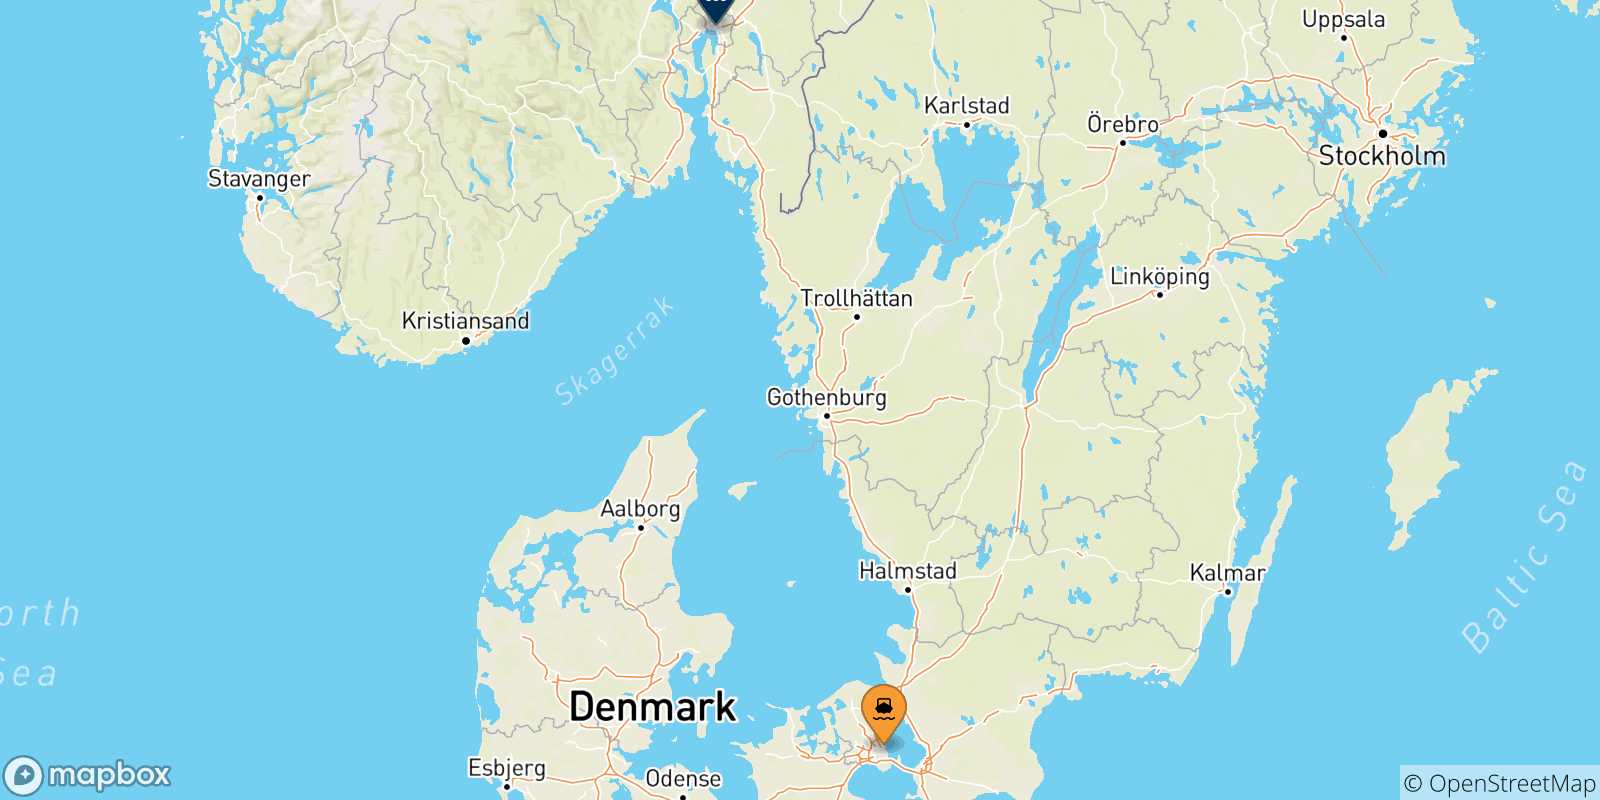 Mappa delle possibili rotte tra Copenhagen e la Norvegia